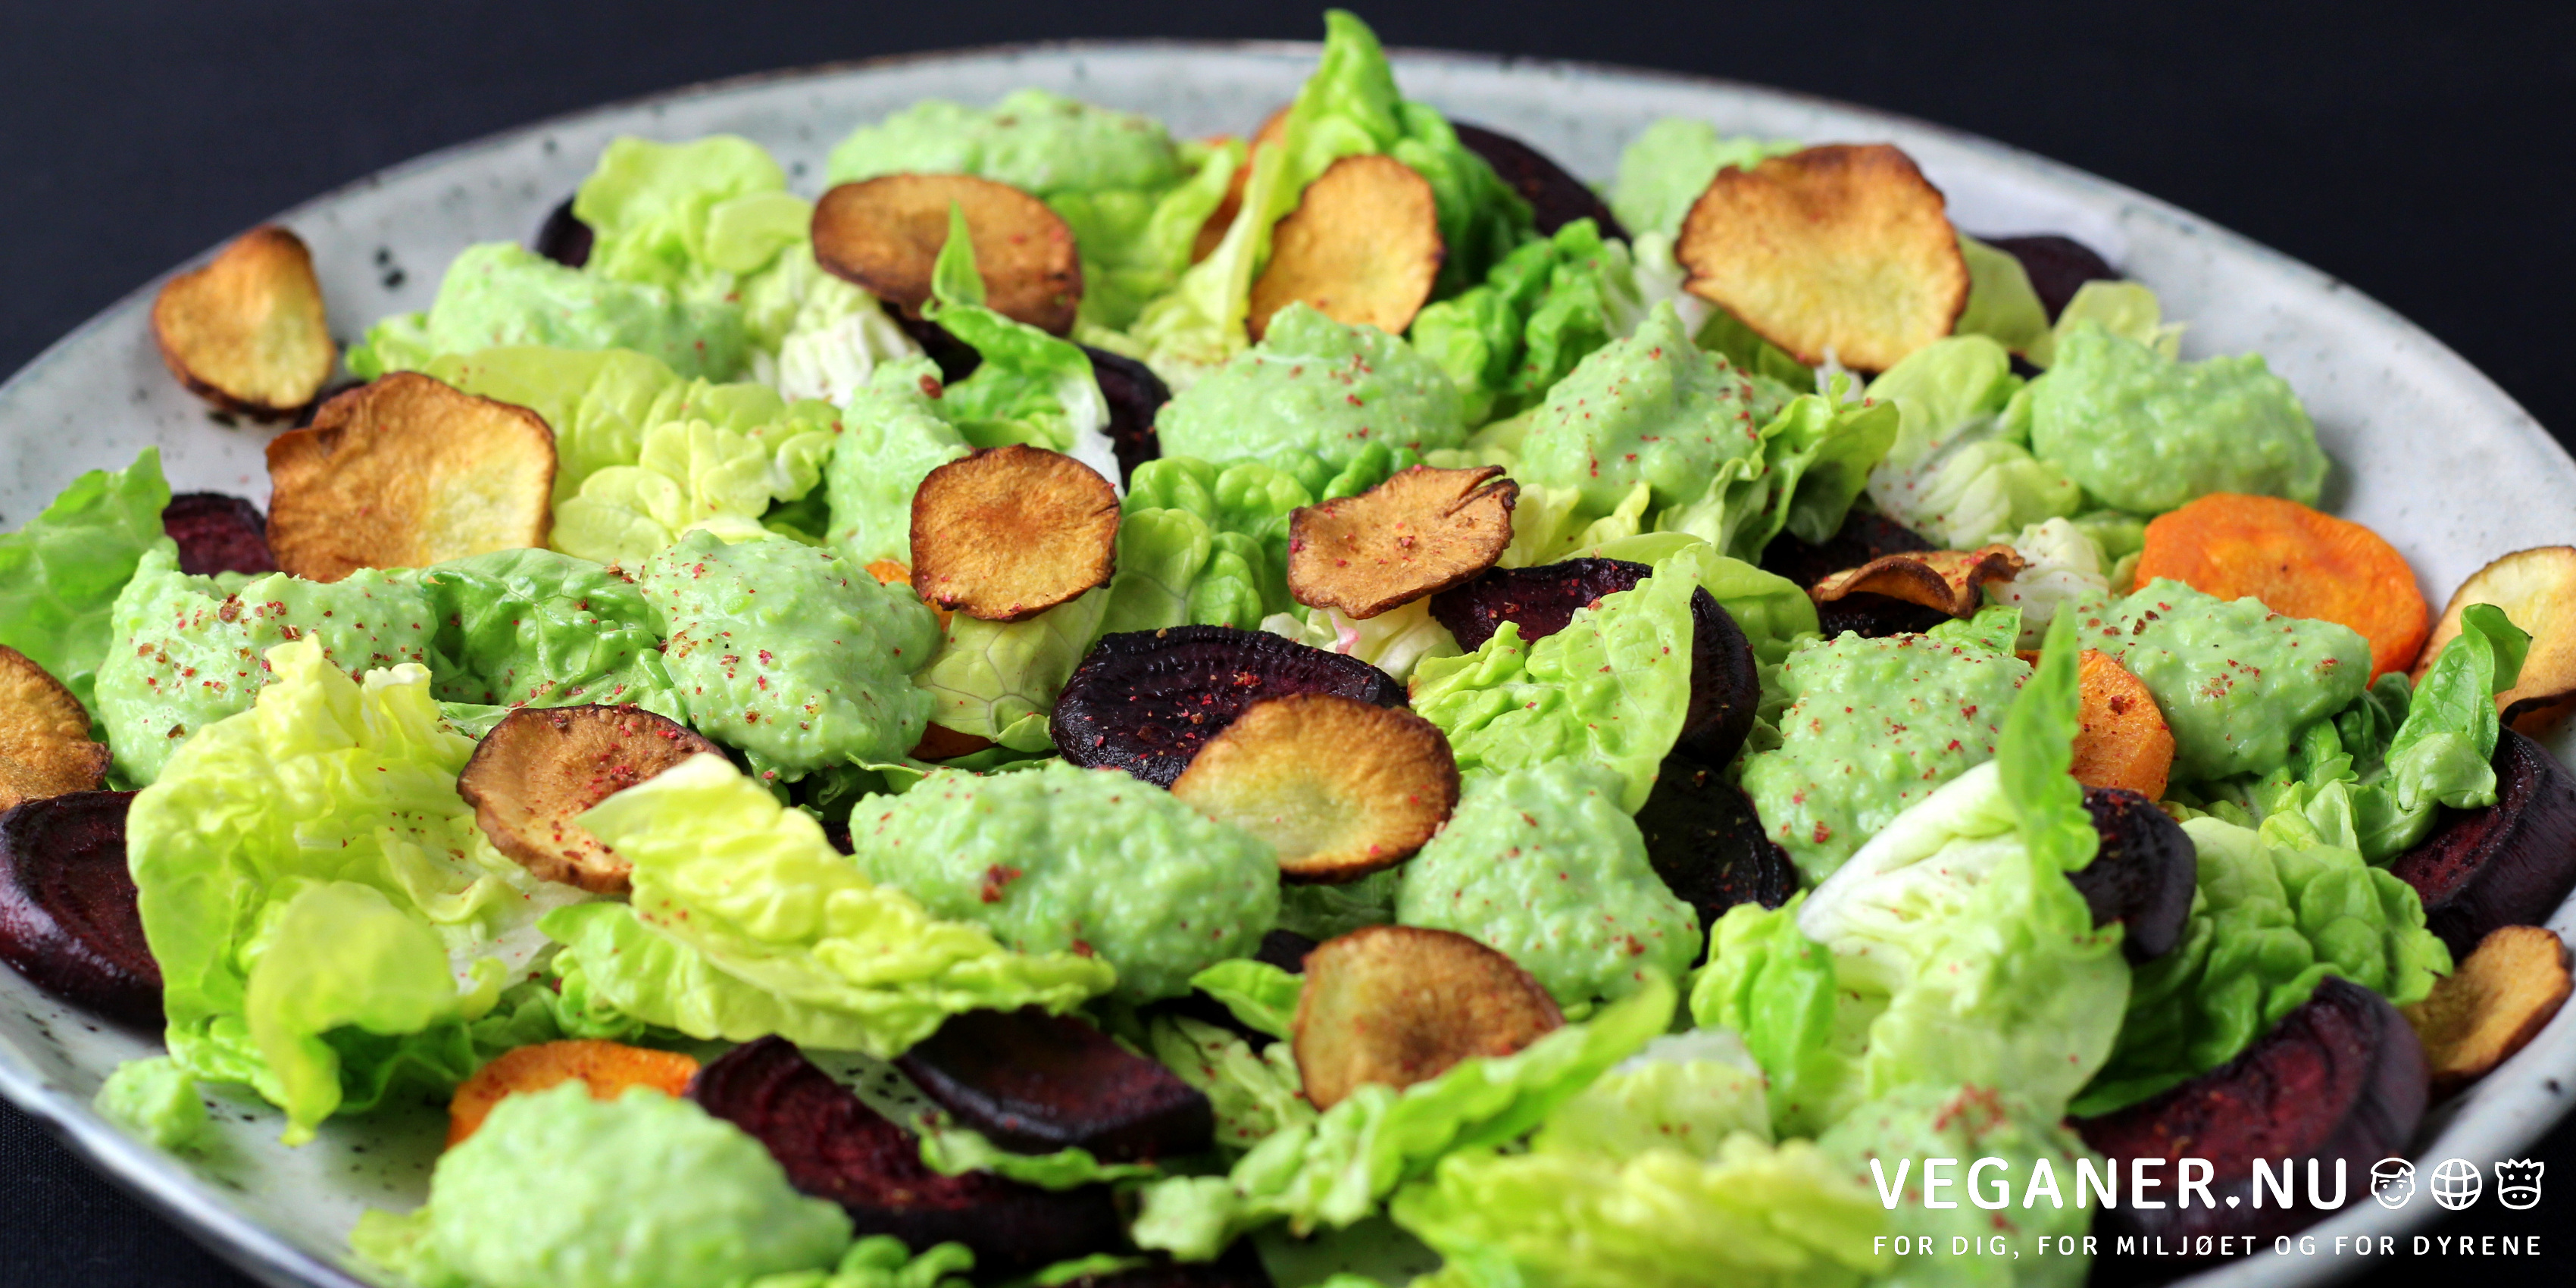 Veganer.nu-bagt rodfrugtssalat med grov ærtepure og jordskokkechips